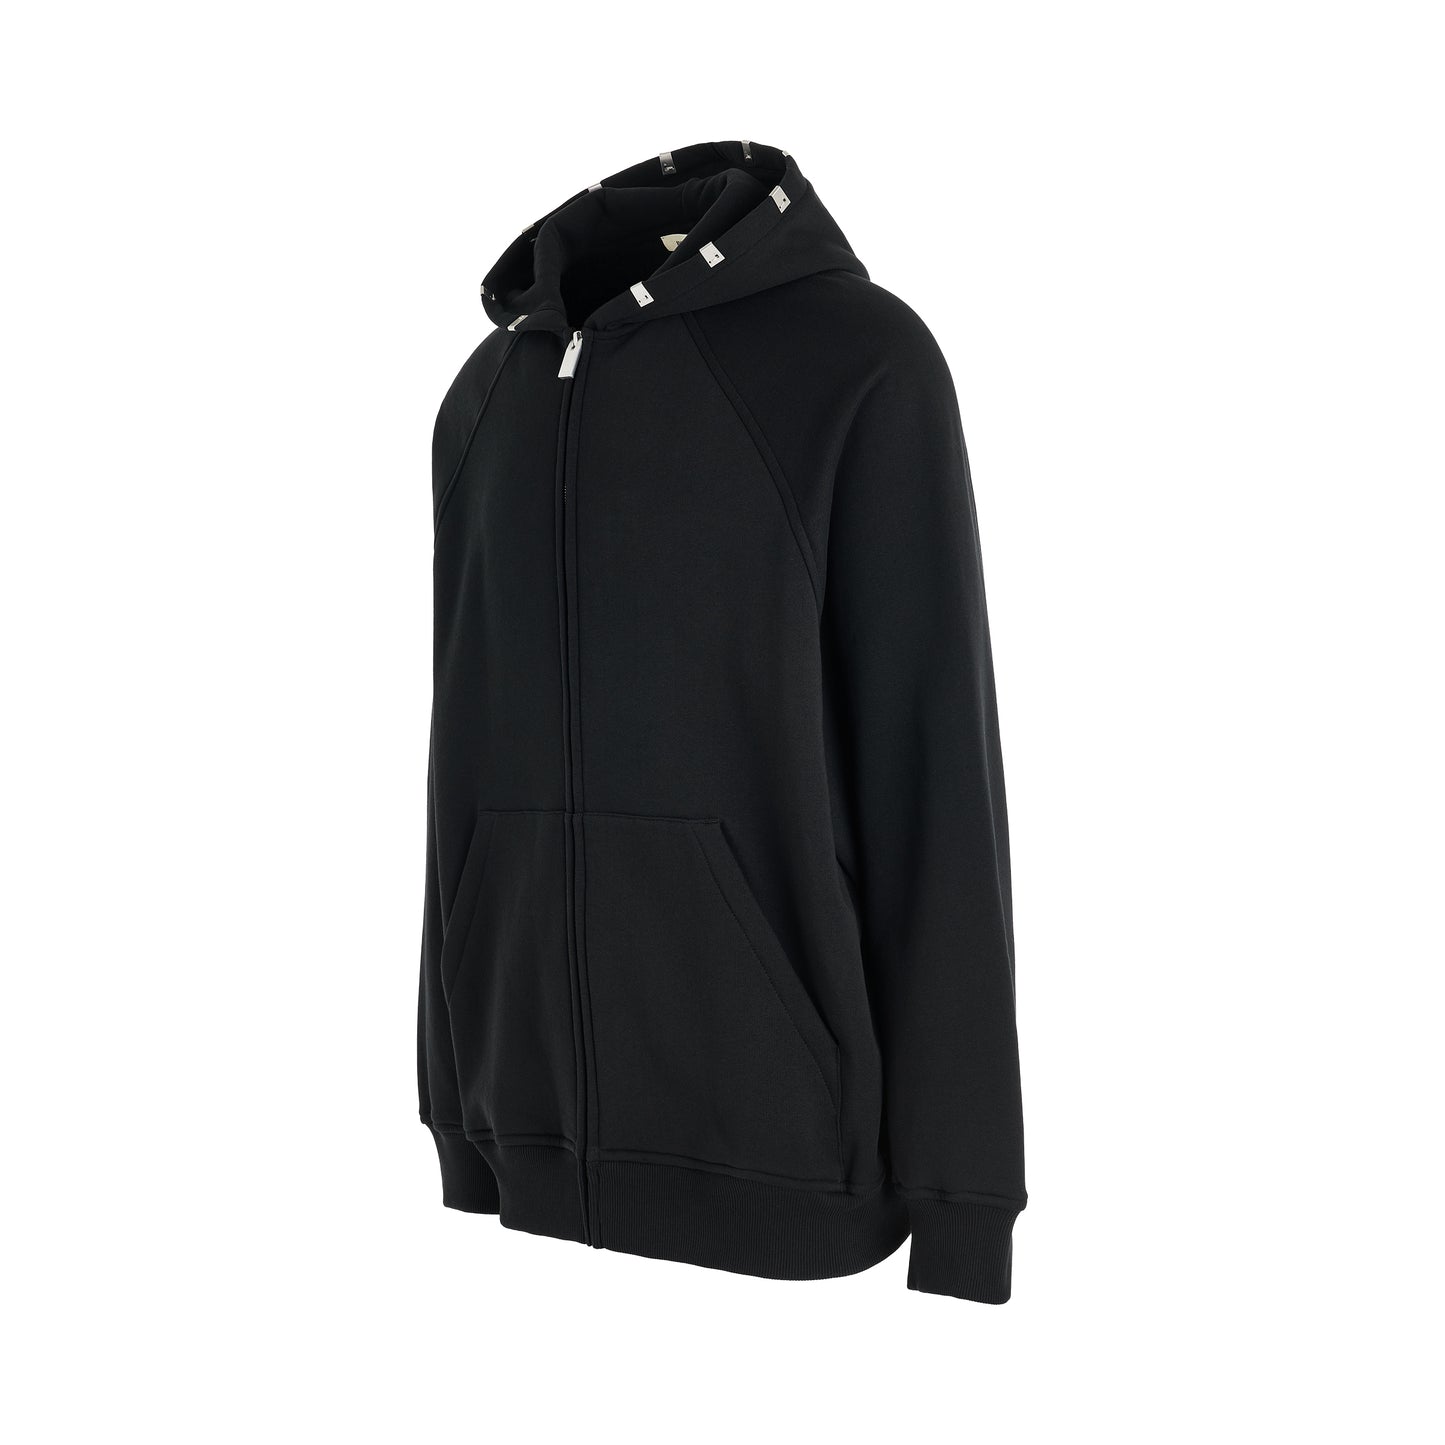 Lightercap Hood Zip Sweatshirt in Black